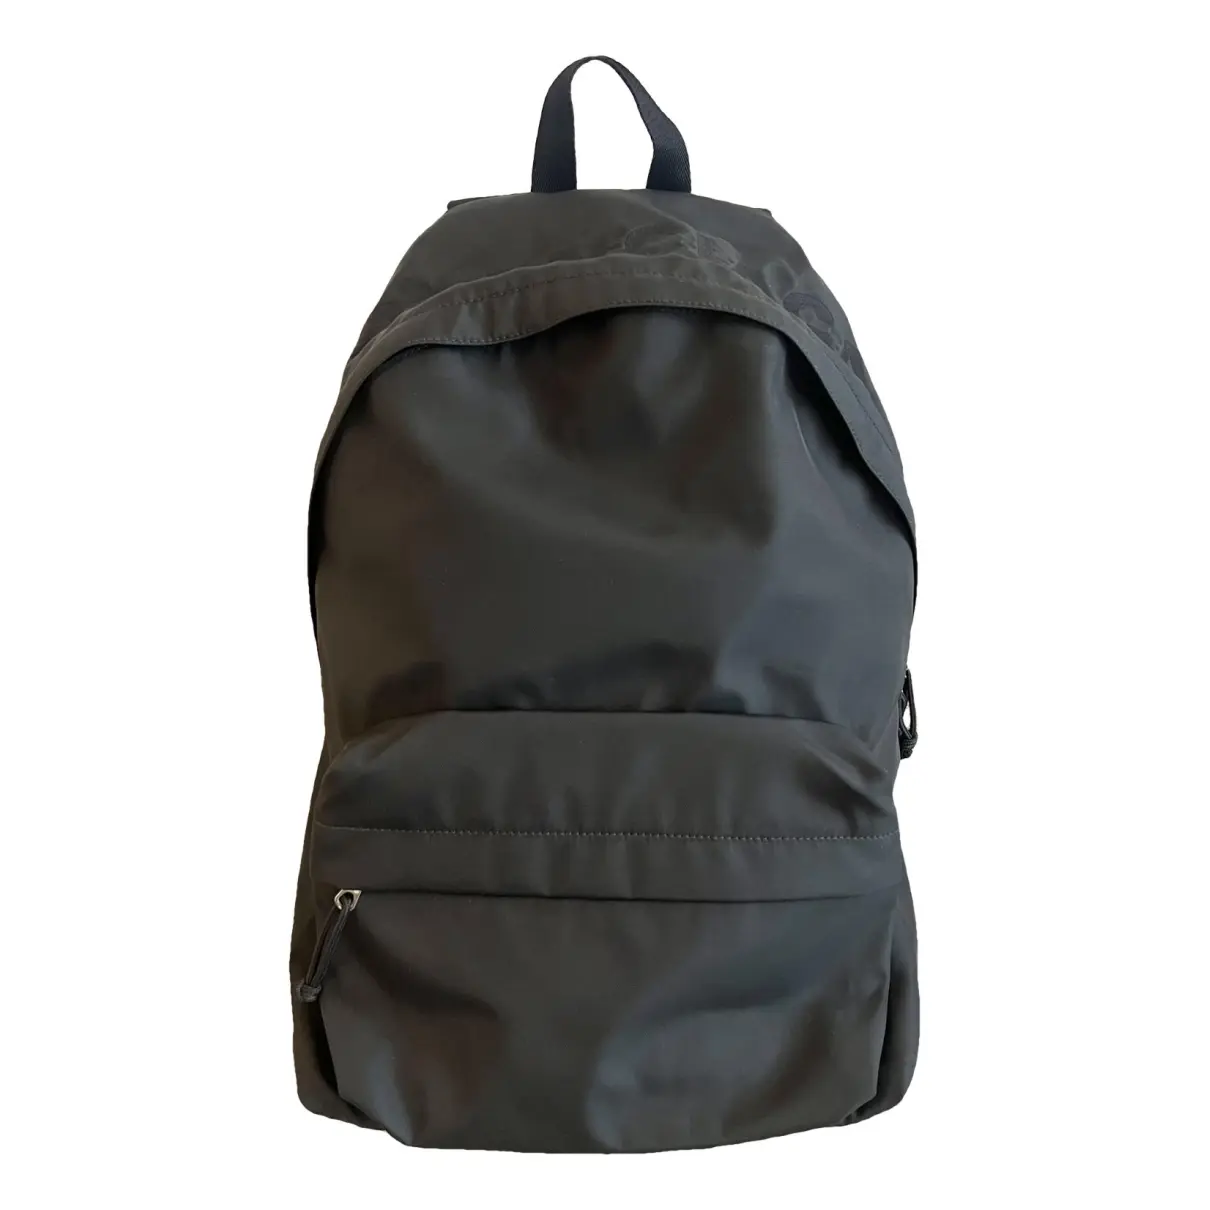 Wheel cloth backpack